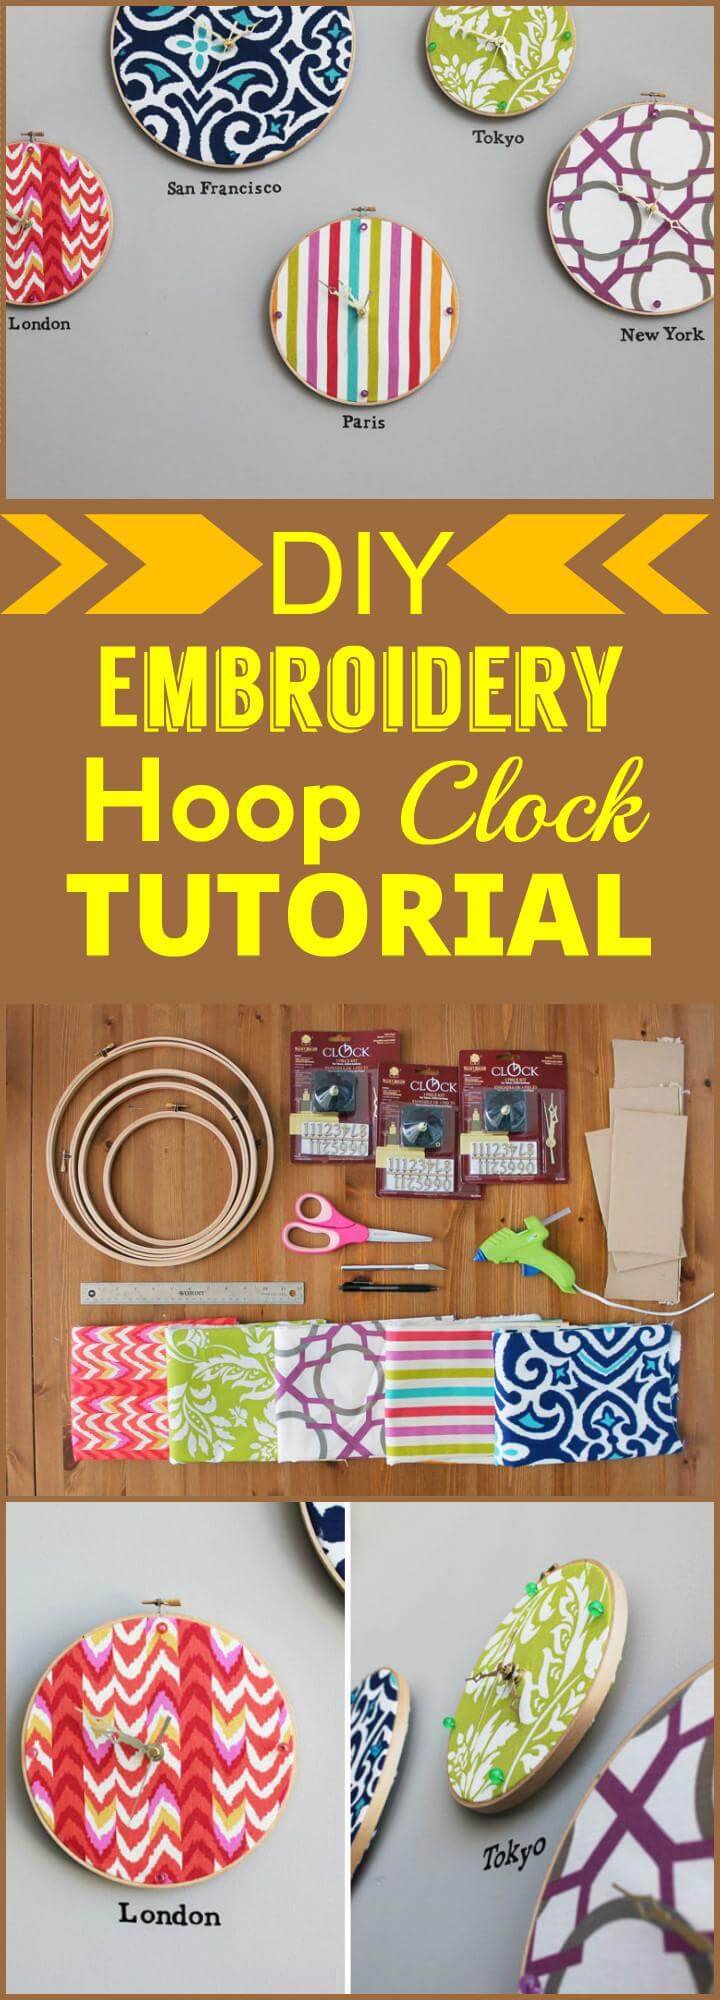 DIY embroidery hoop clock tutorial